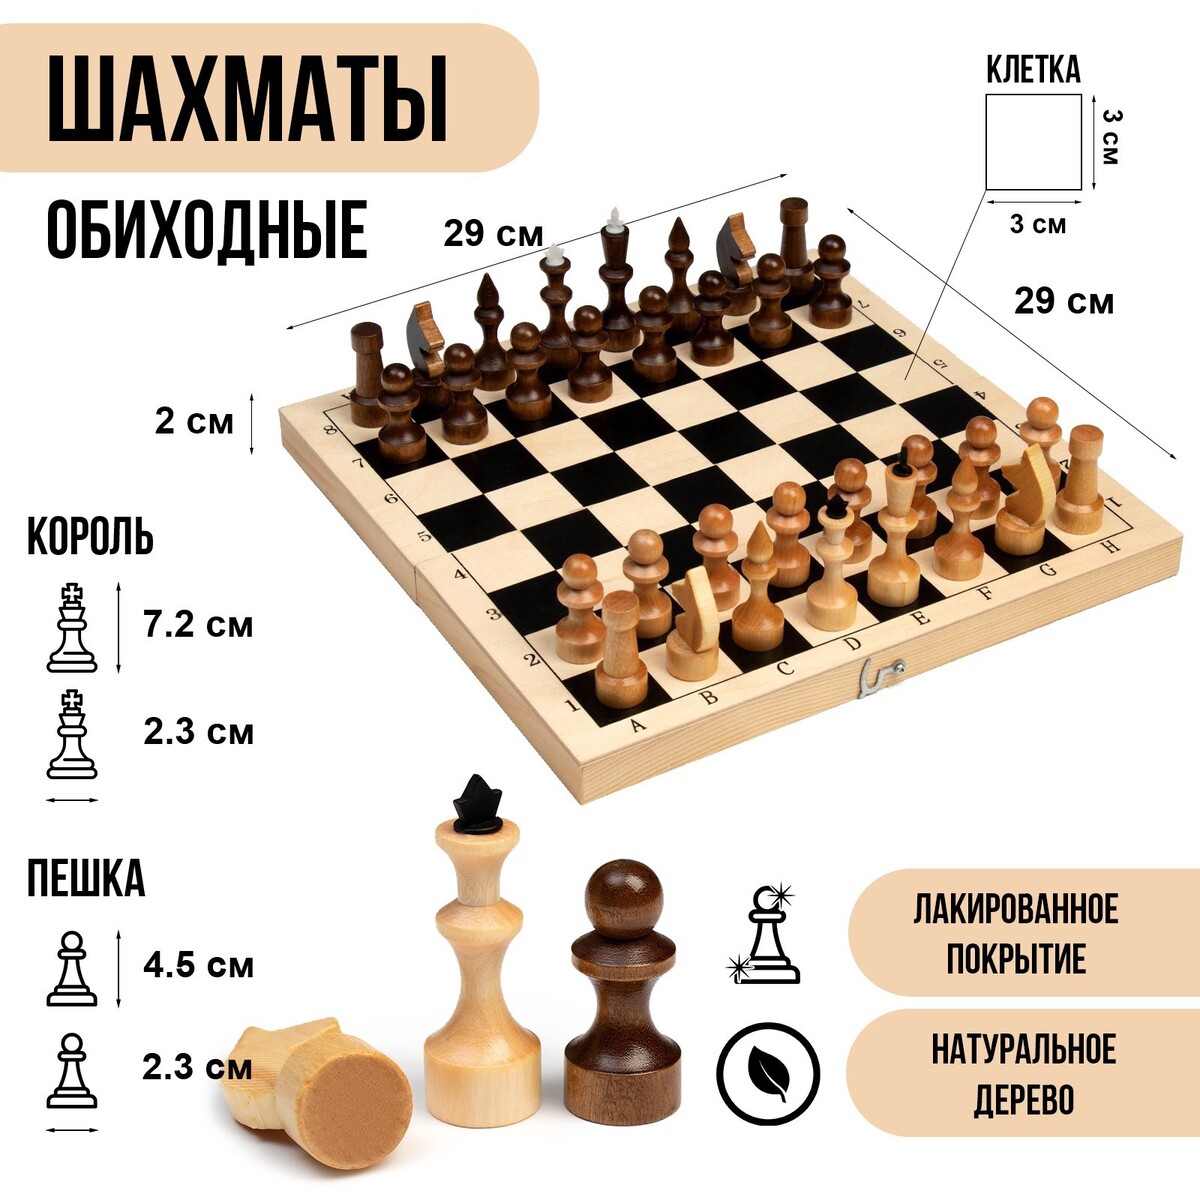 Шахматы деревянные обиходные 29 х 29 см, король h-7.2 см, пешка h-4.5 см шахматы обиходные 29 х 29 см король 6 7 см пешка 3 5 см